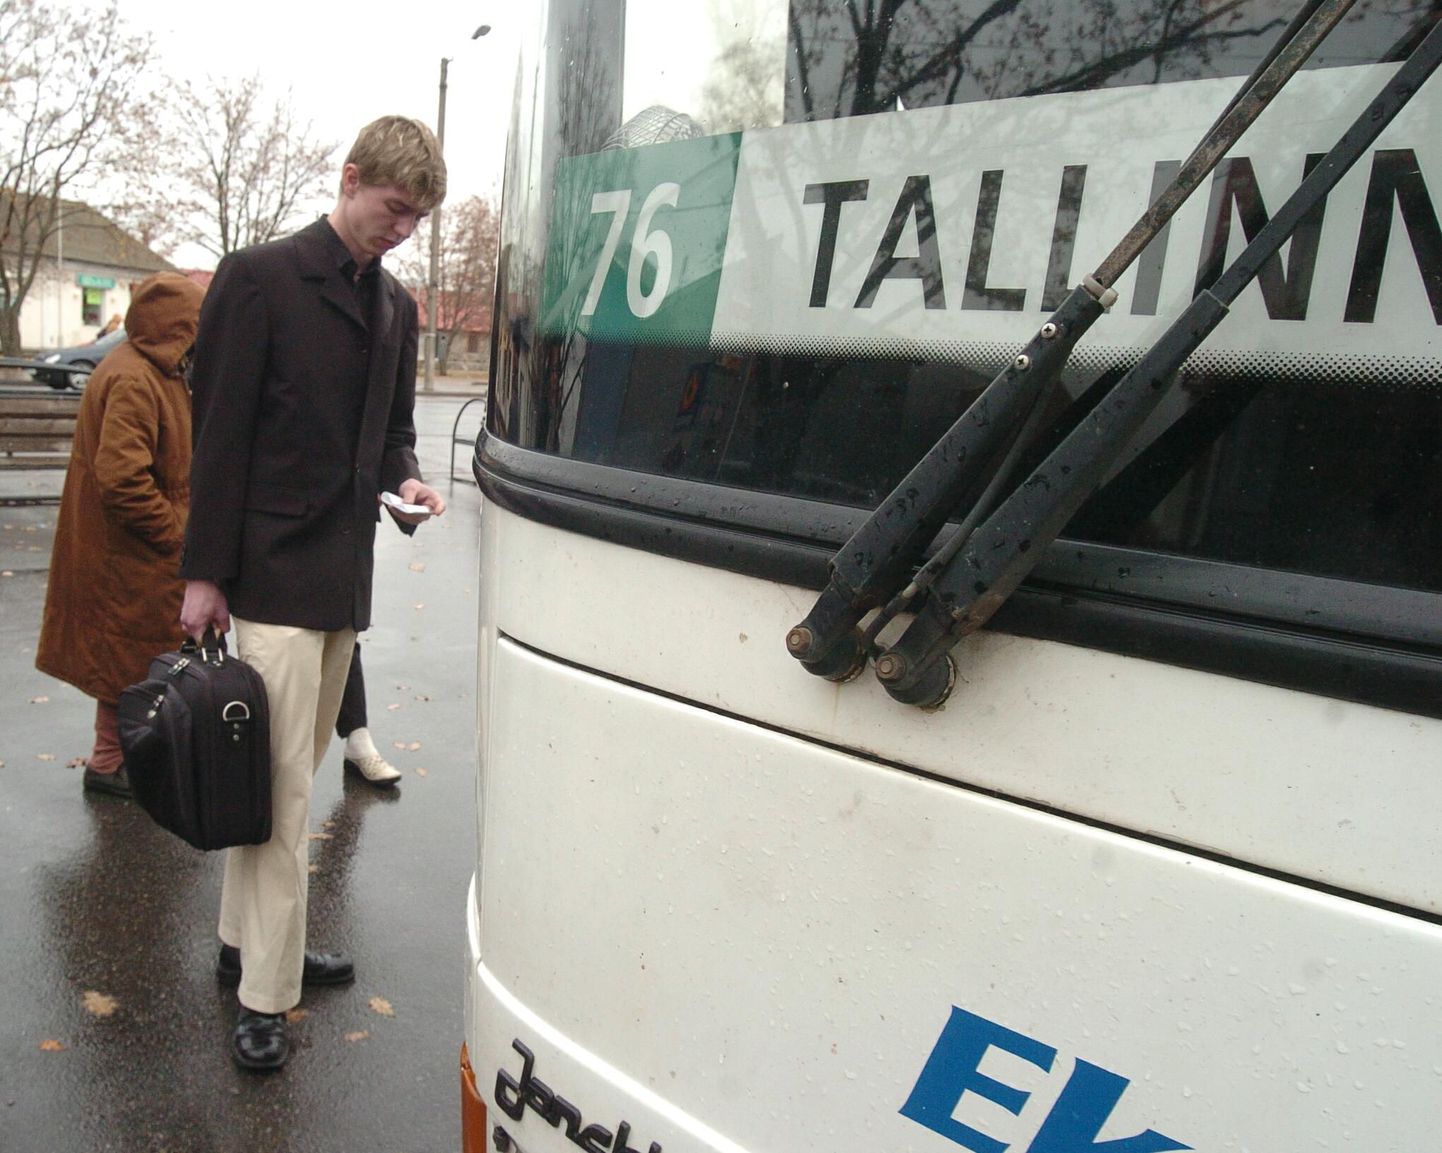 Vändra kandi rahvas saab edaspidi otse Tallinnasse sõita kaks korda päevas käivate AS Sebe bussidega. Pildis Sebe buss Pärnu bussijaamas.